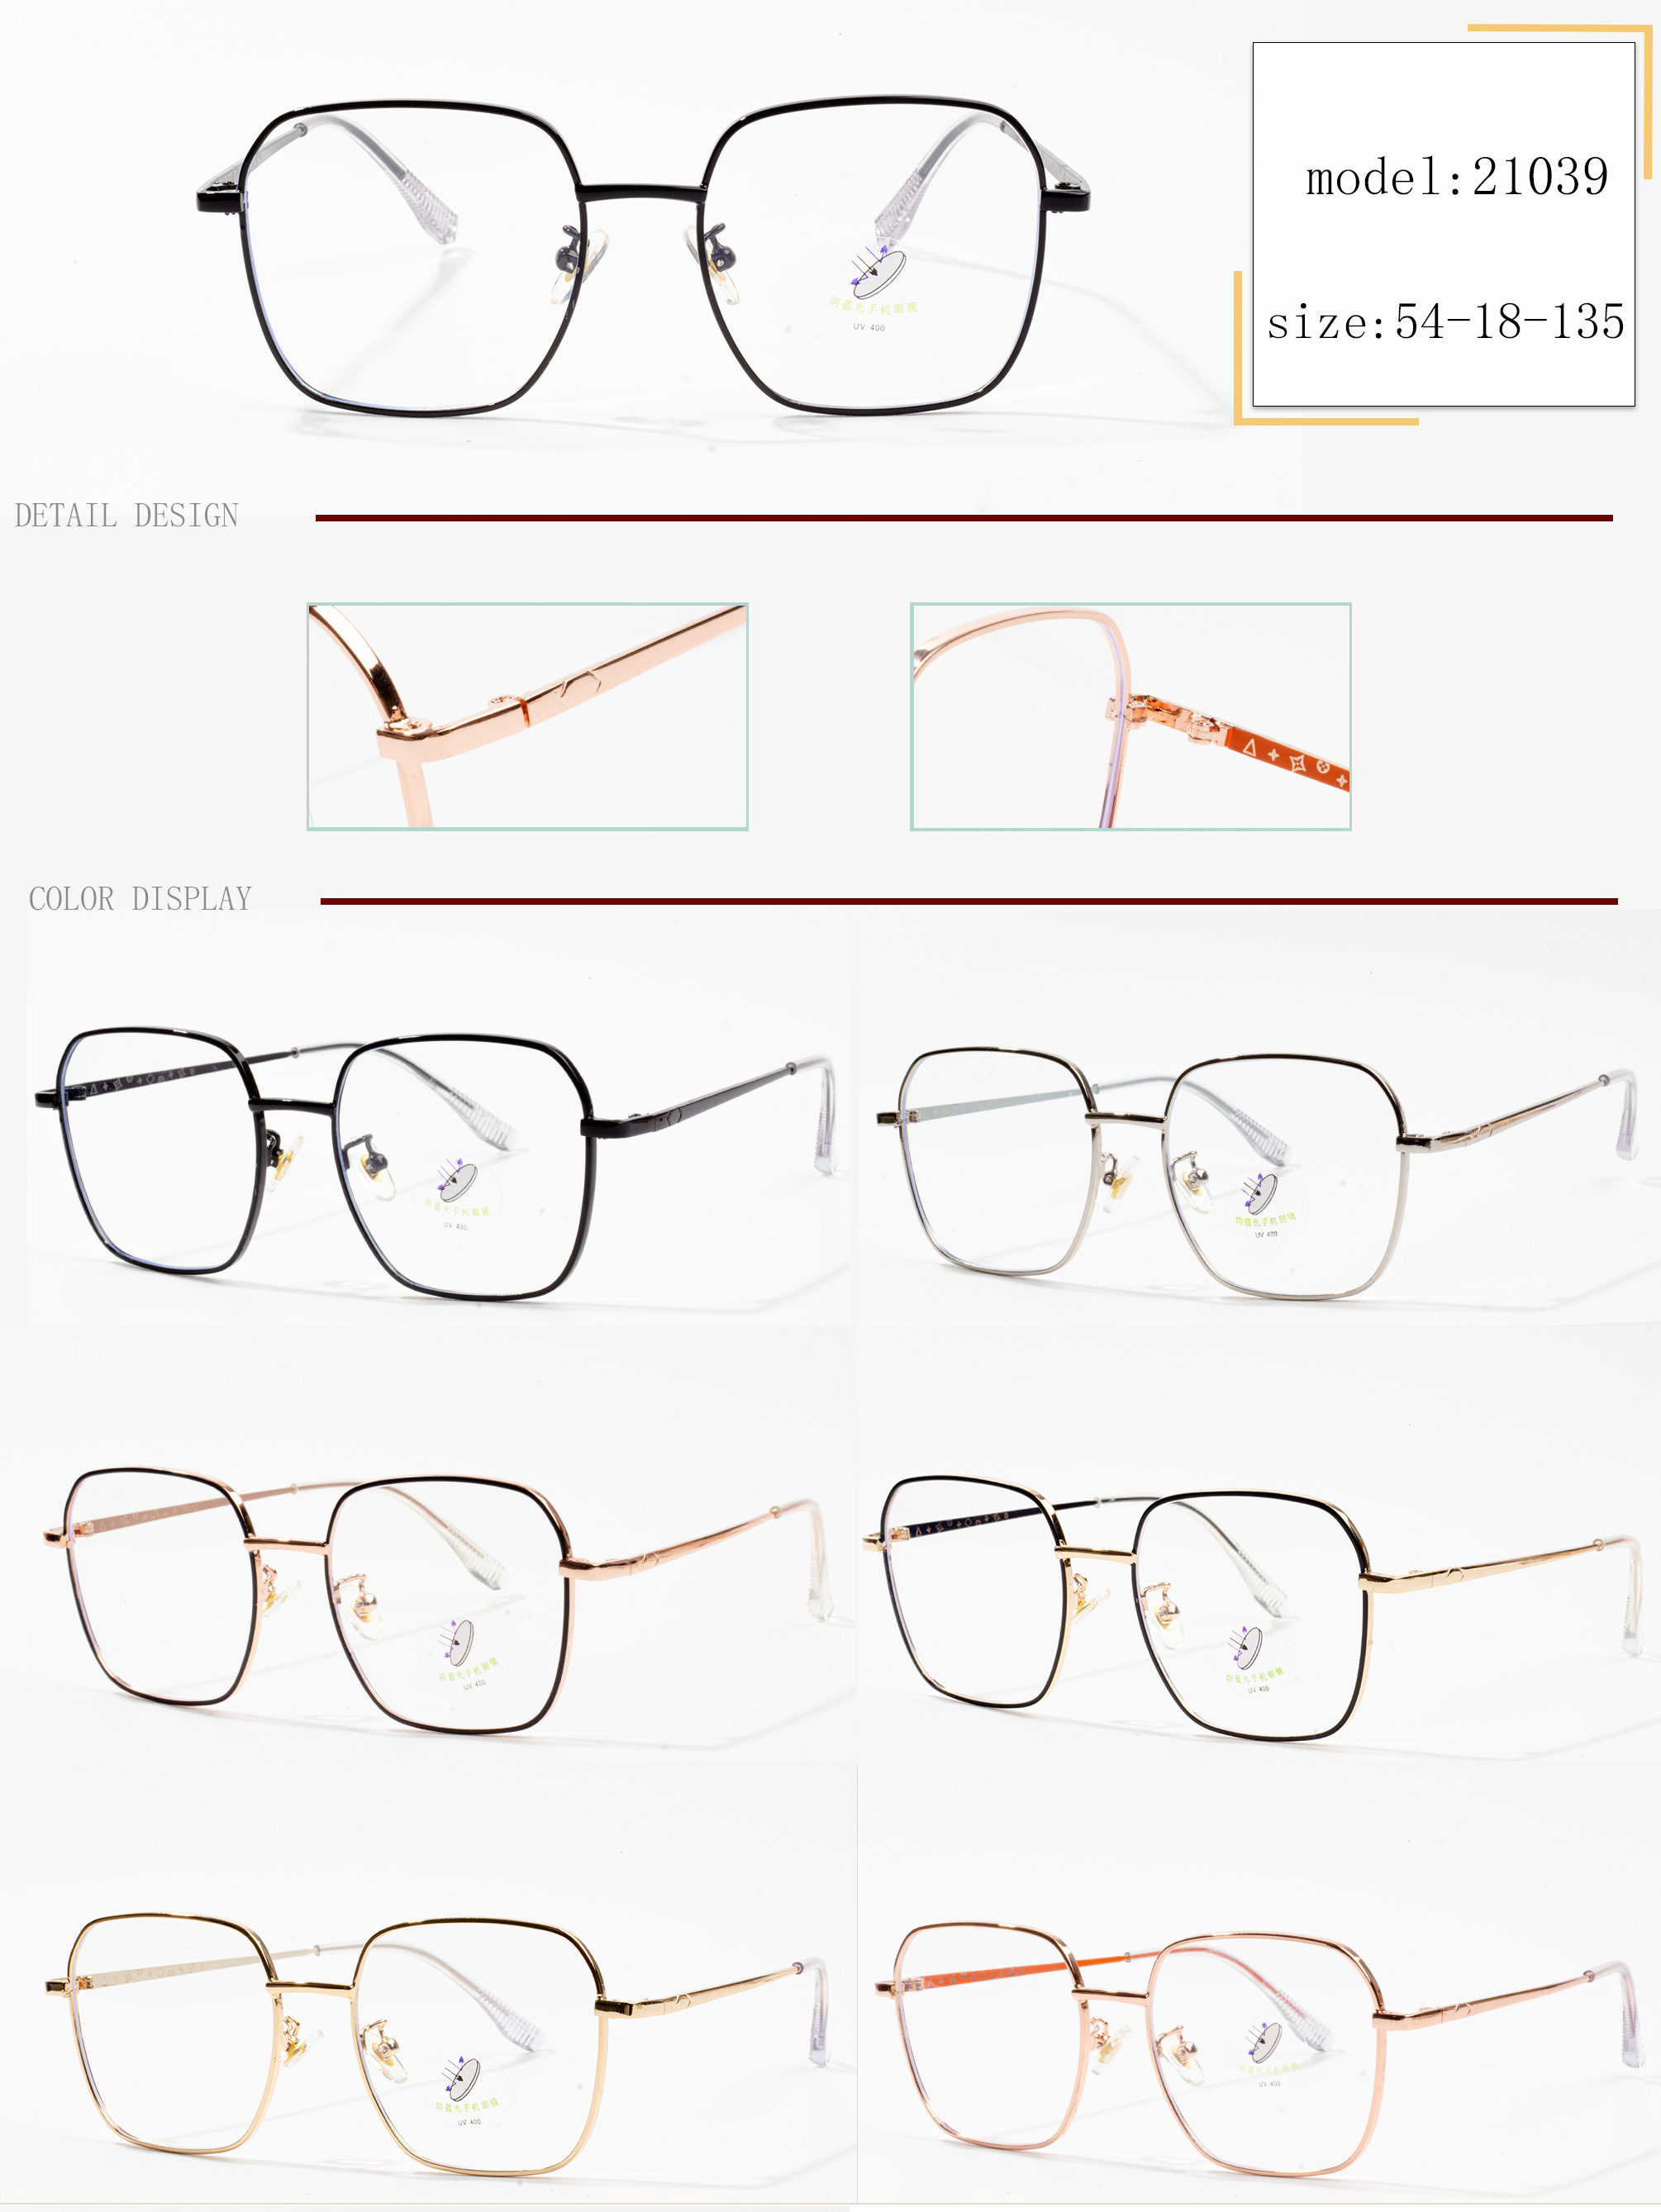 فریم عینک های طراحان